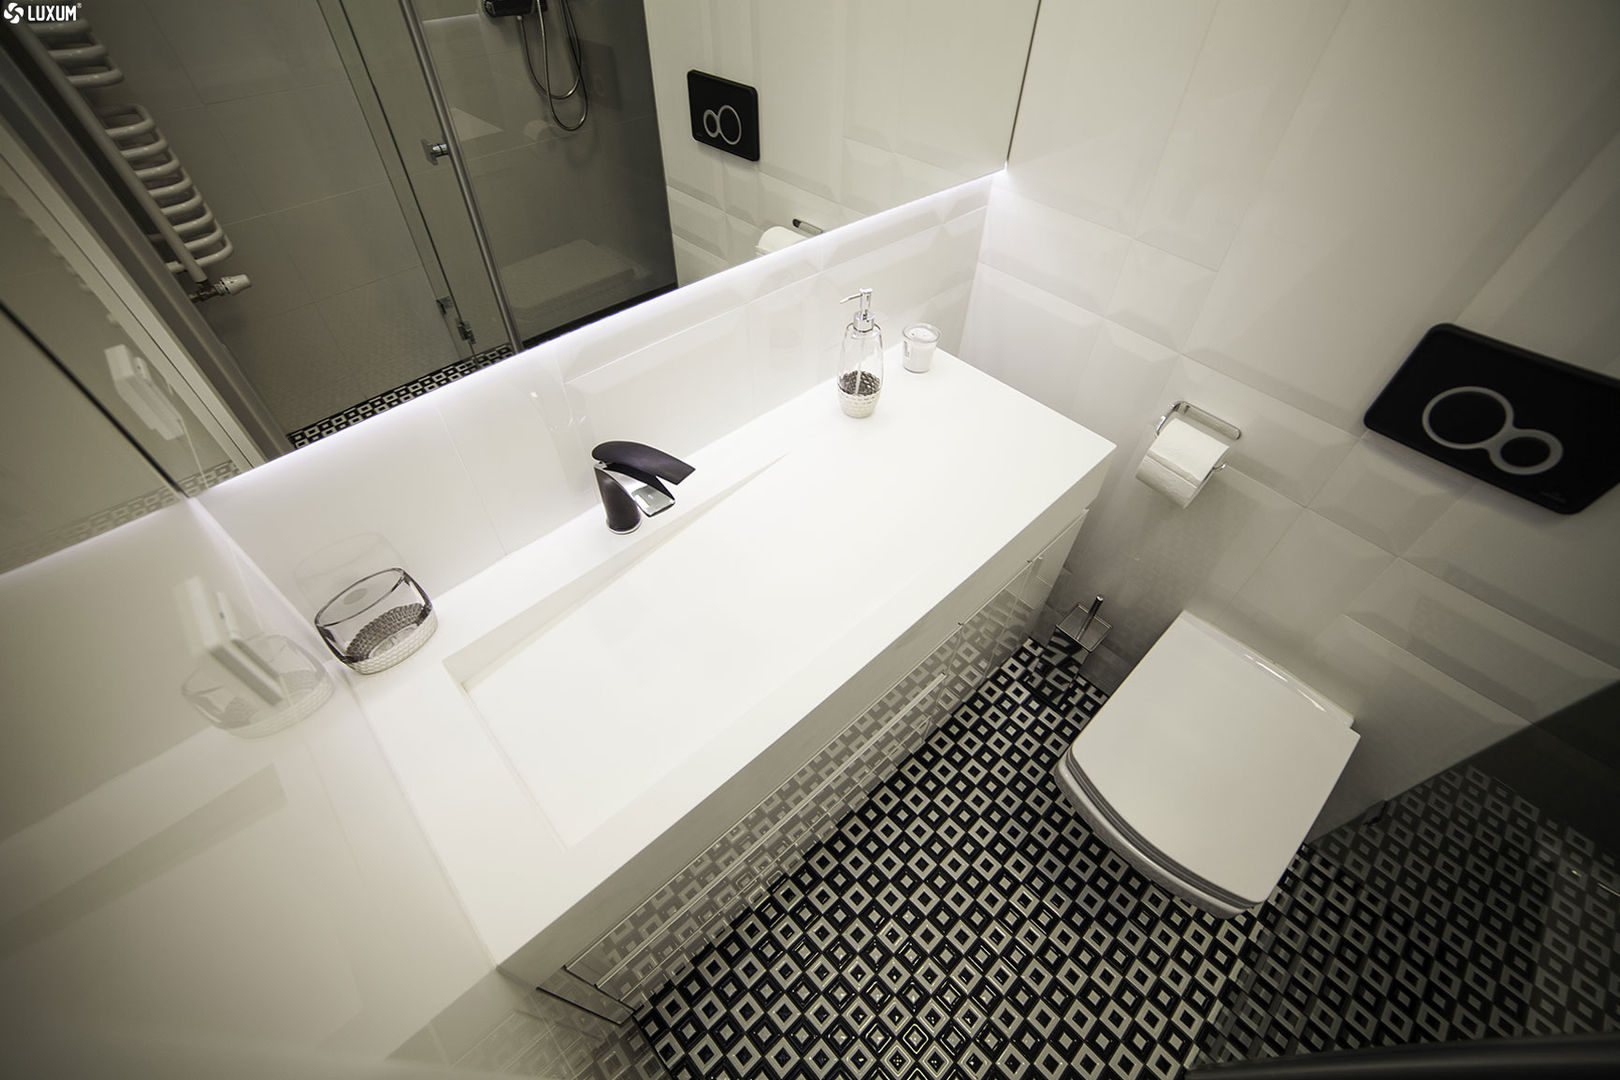 Prostokątna umywalka z odpływem liniowym od Luxum. , Luxum Luxum İskandinav Banyo